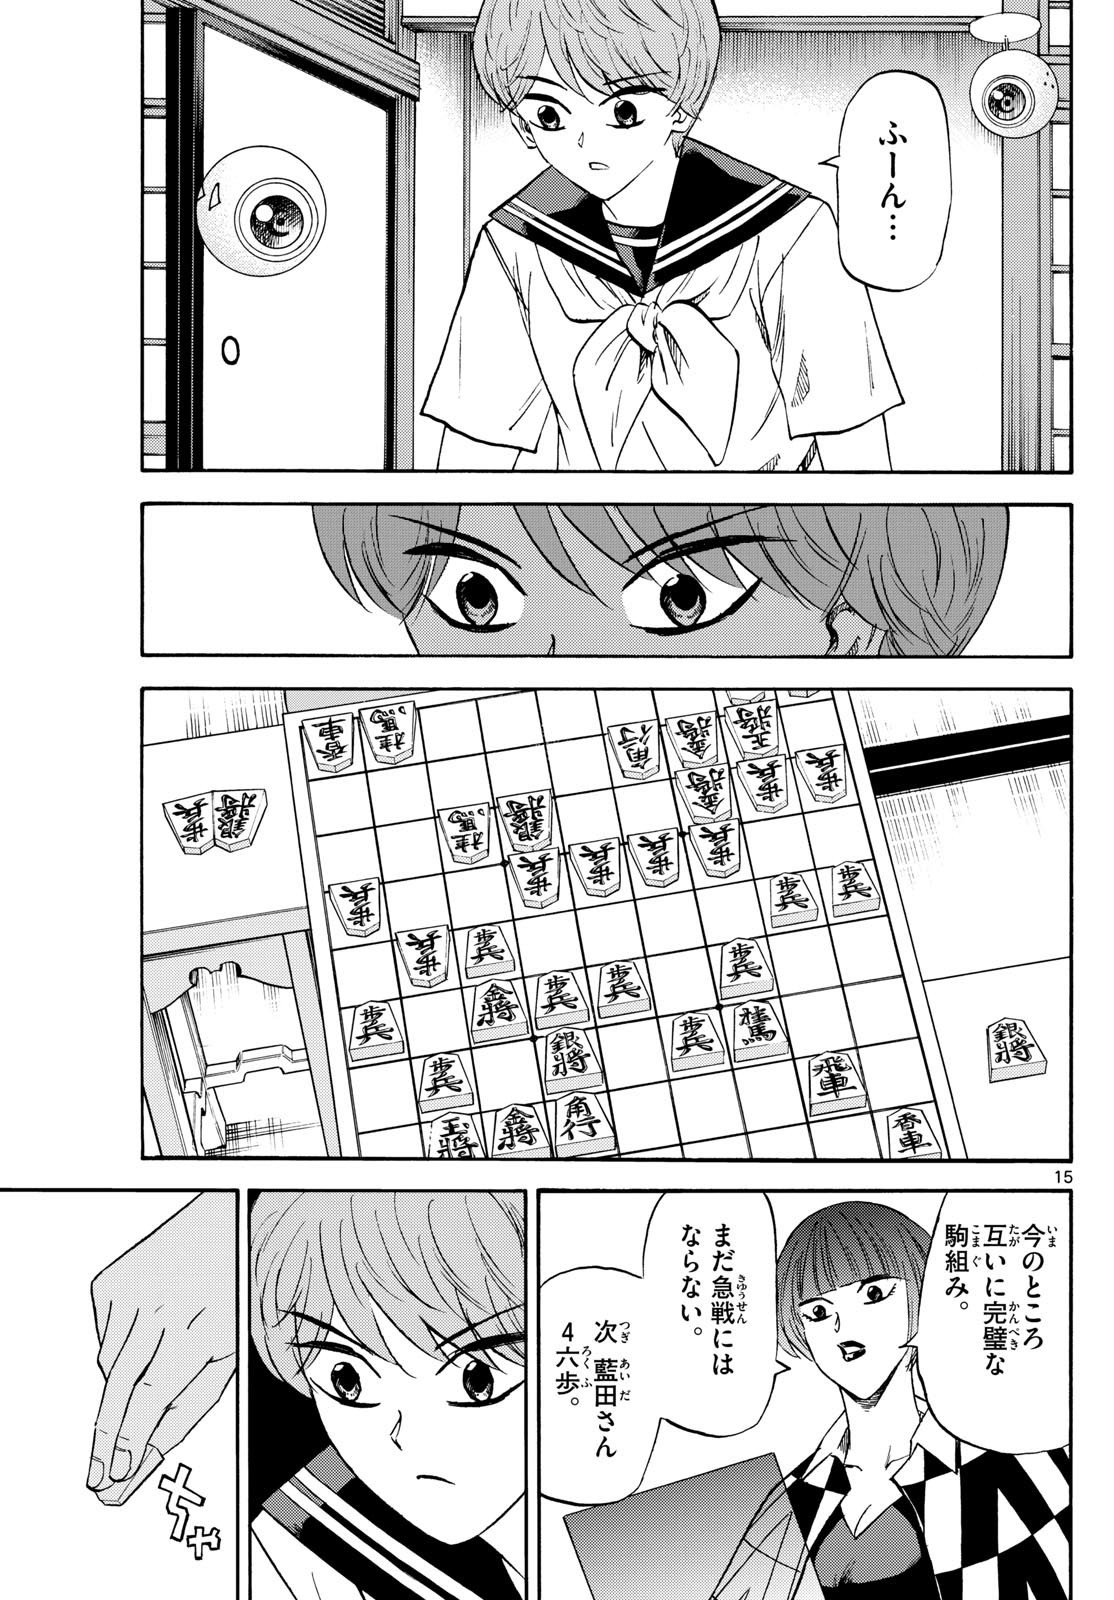 Ryu-to-Ichigo - Chapter 197 - Page 15